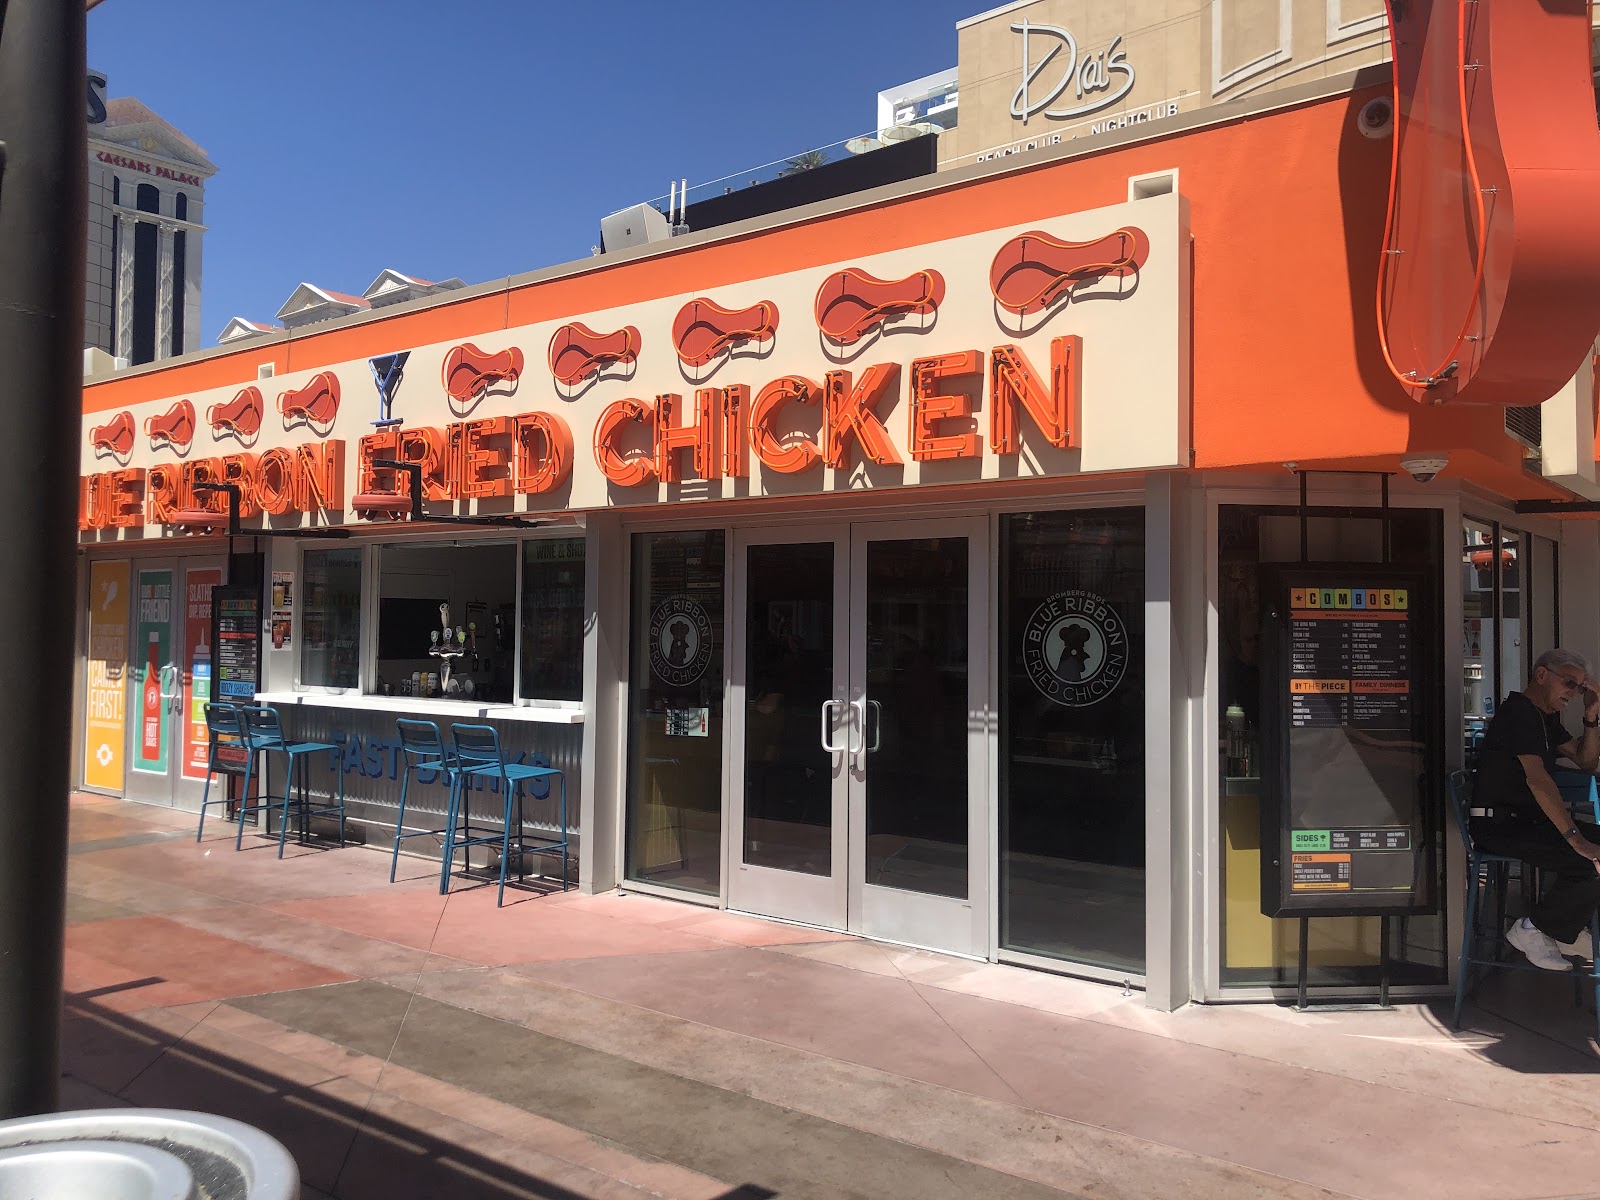 Chicken restaurant on Las Vegas Strip